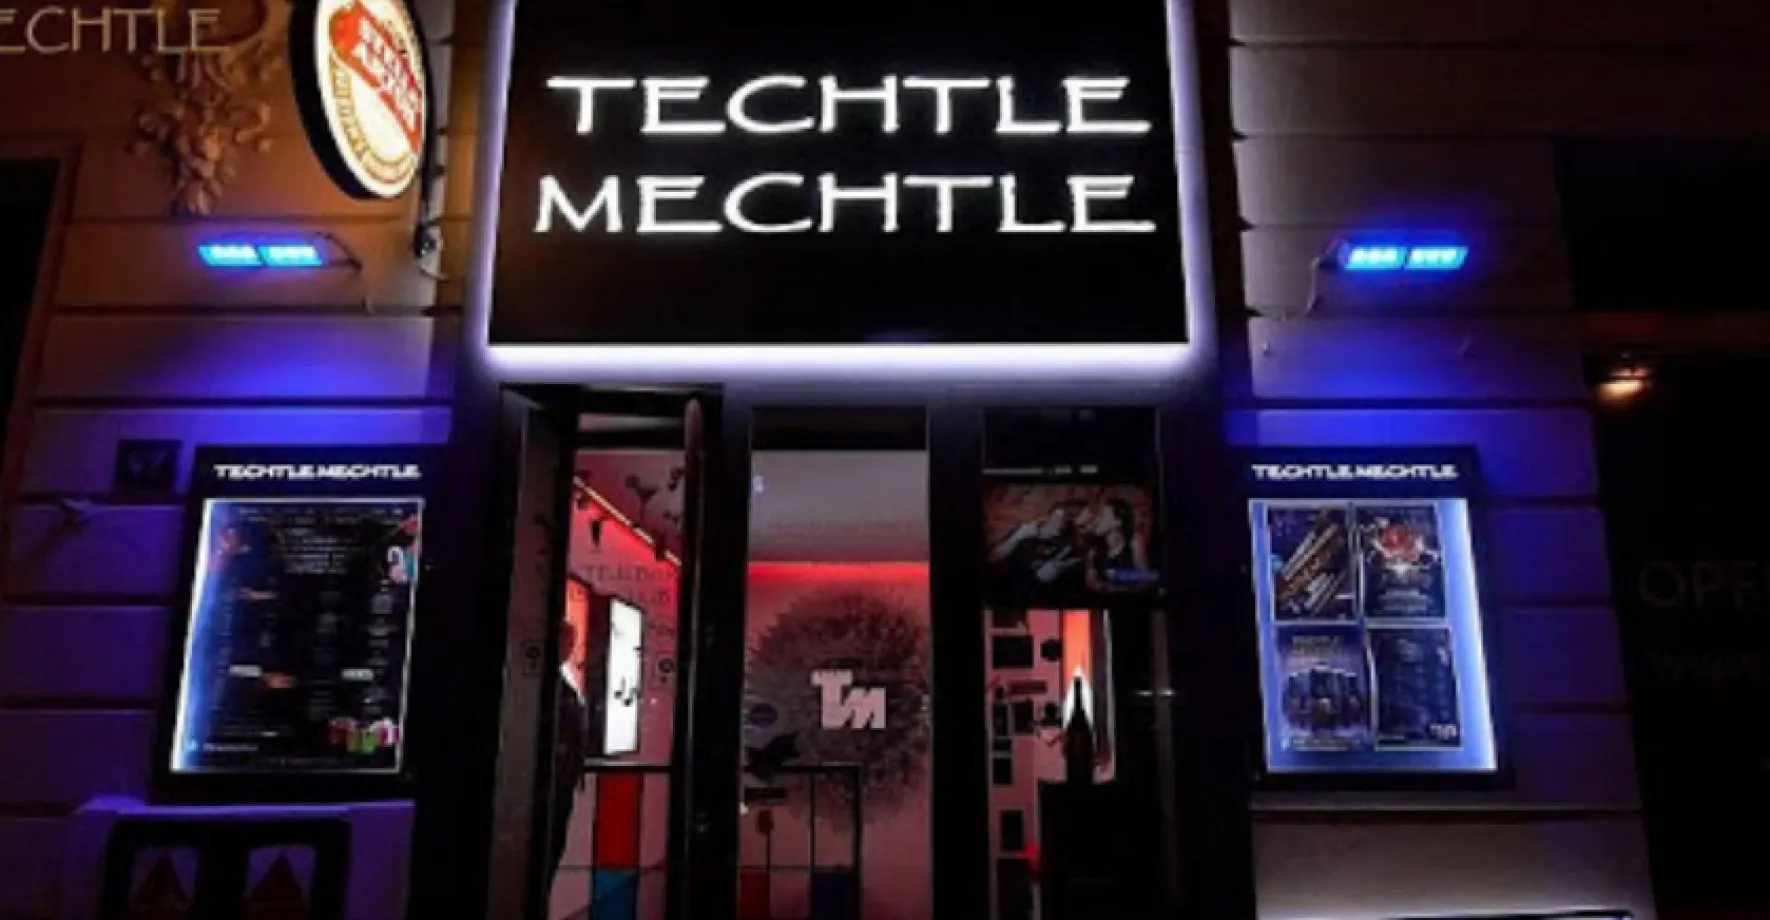 Desítky mladých sportovců nakazilo v klubu Techtle Mechtle jedno děvče